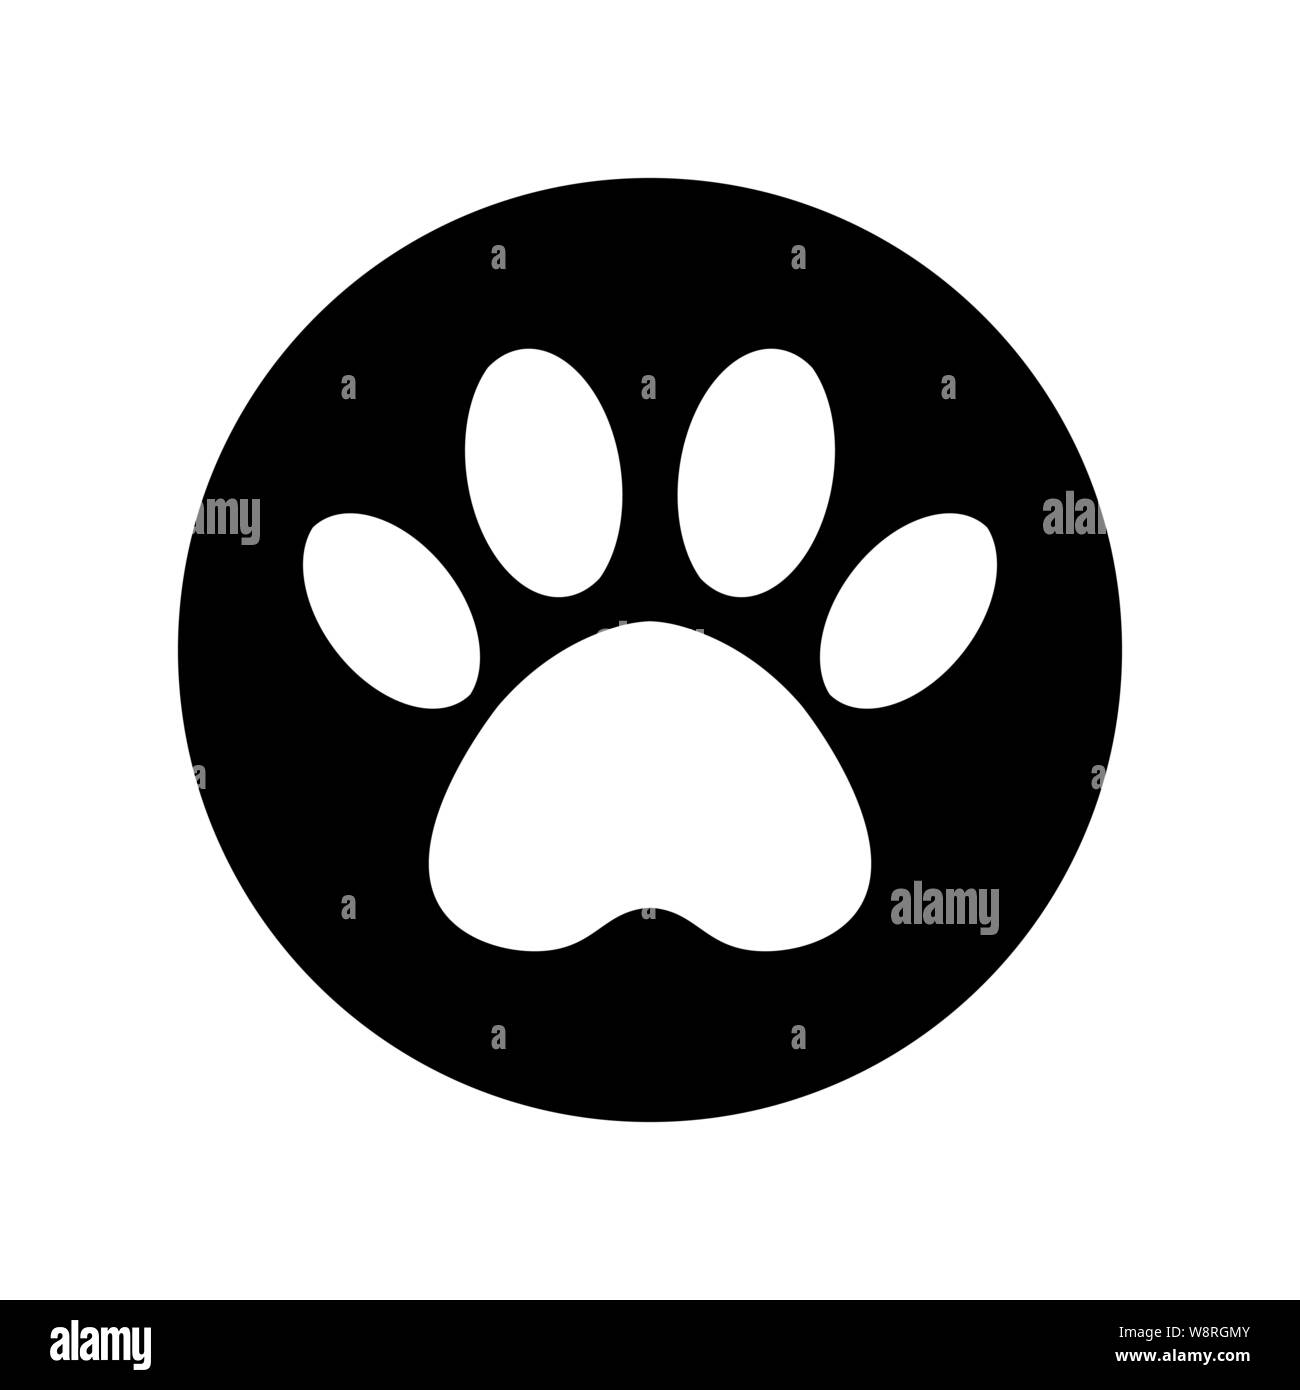 Cat and Dog paw print all'interno del cerchio. Il cane in pista il cerchio nero. Illustrazione Vettoriale